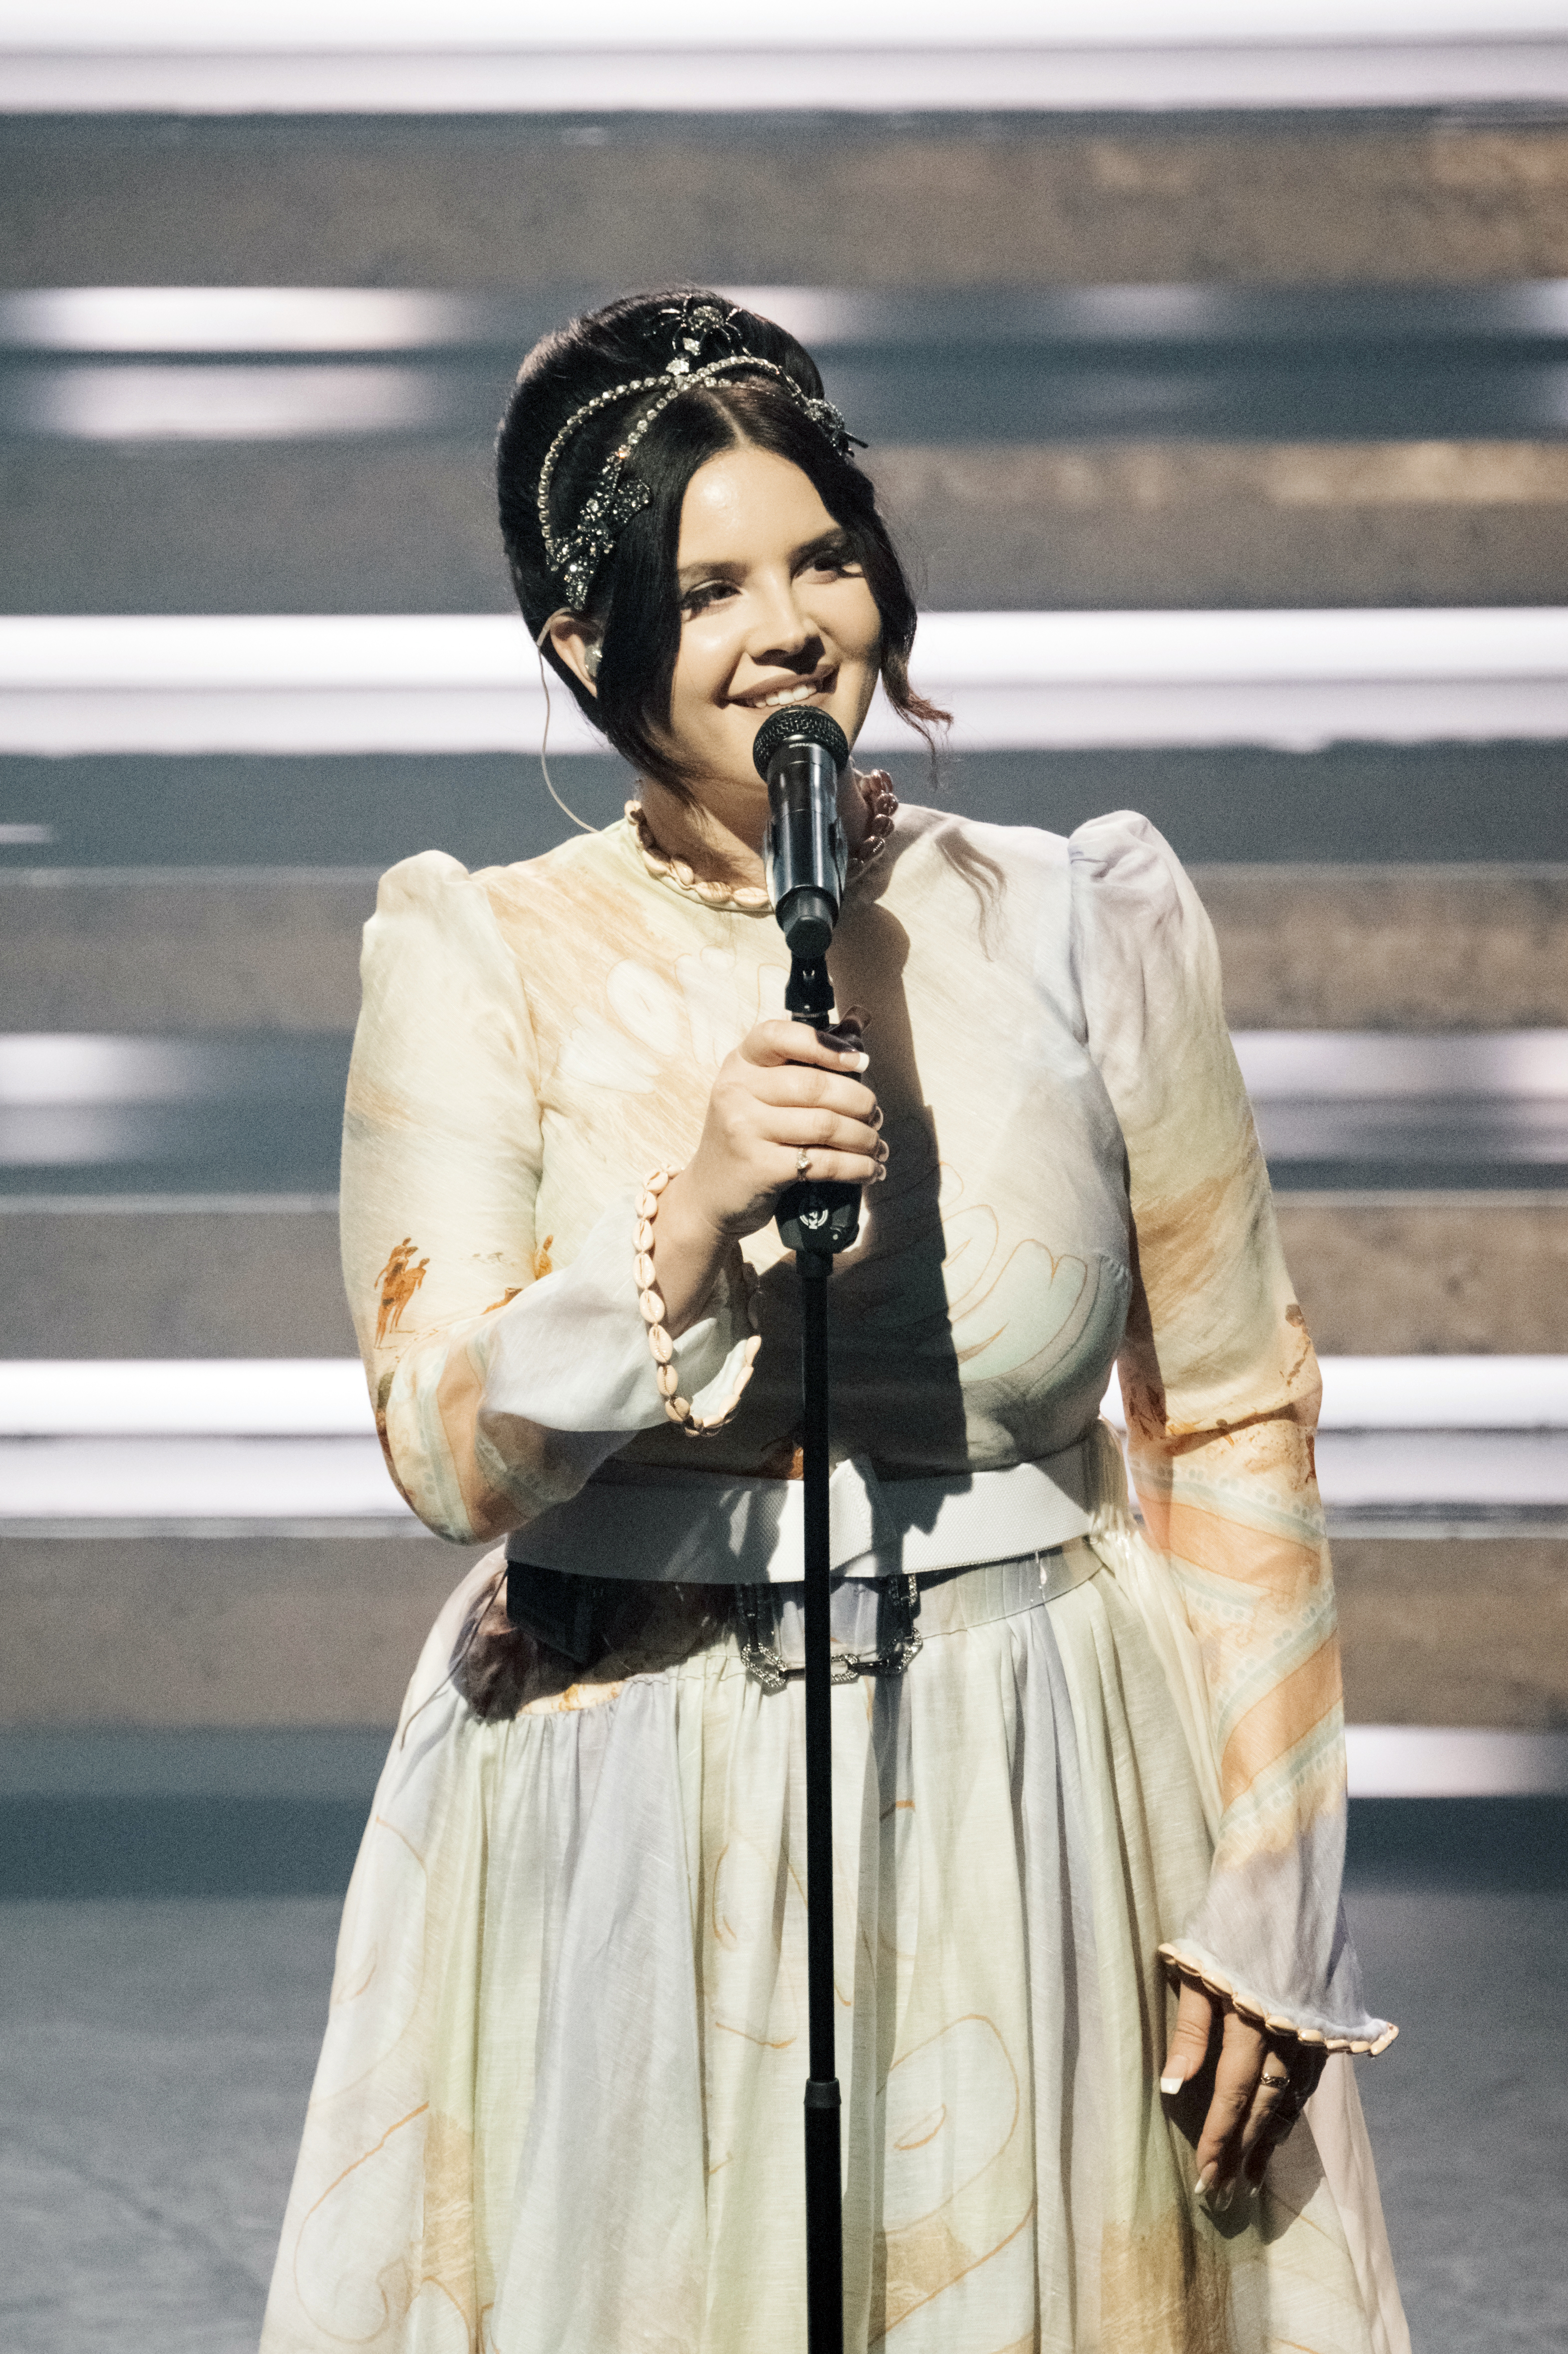 Lana Del Rey onstage